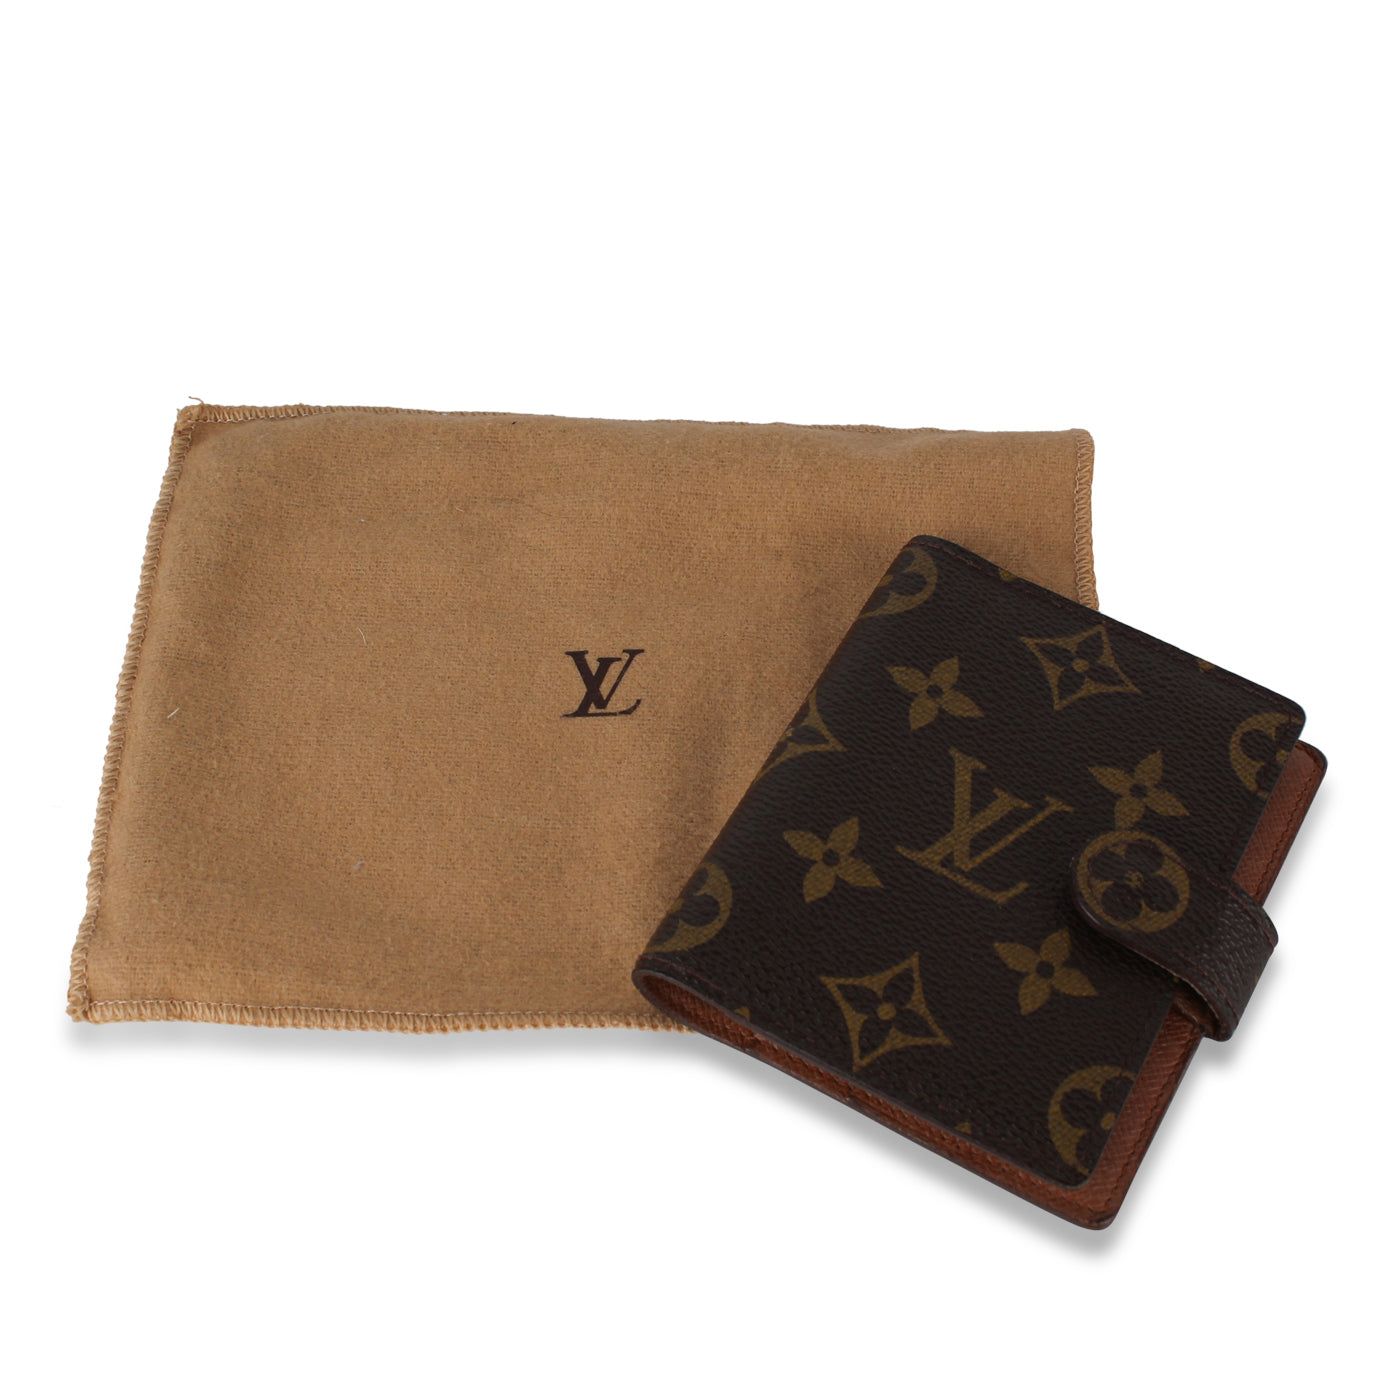 Louis Vuitton, Bags, Louis Vuitton Vintage Monogram Card Holder Wallet